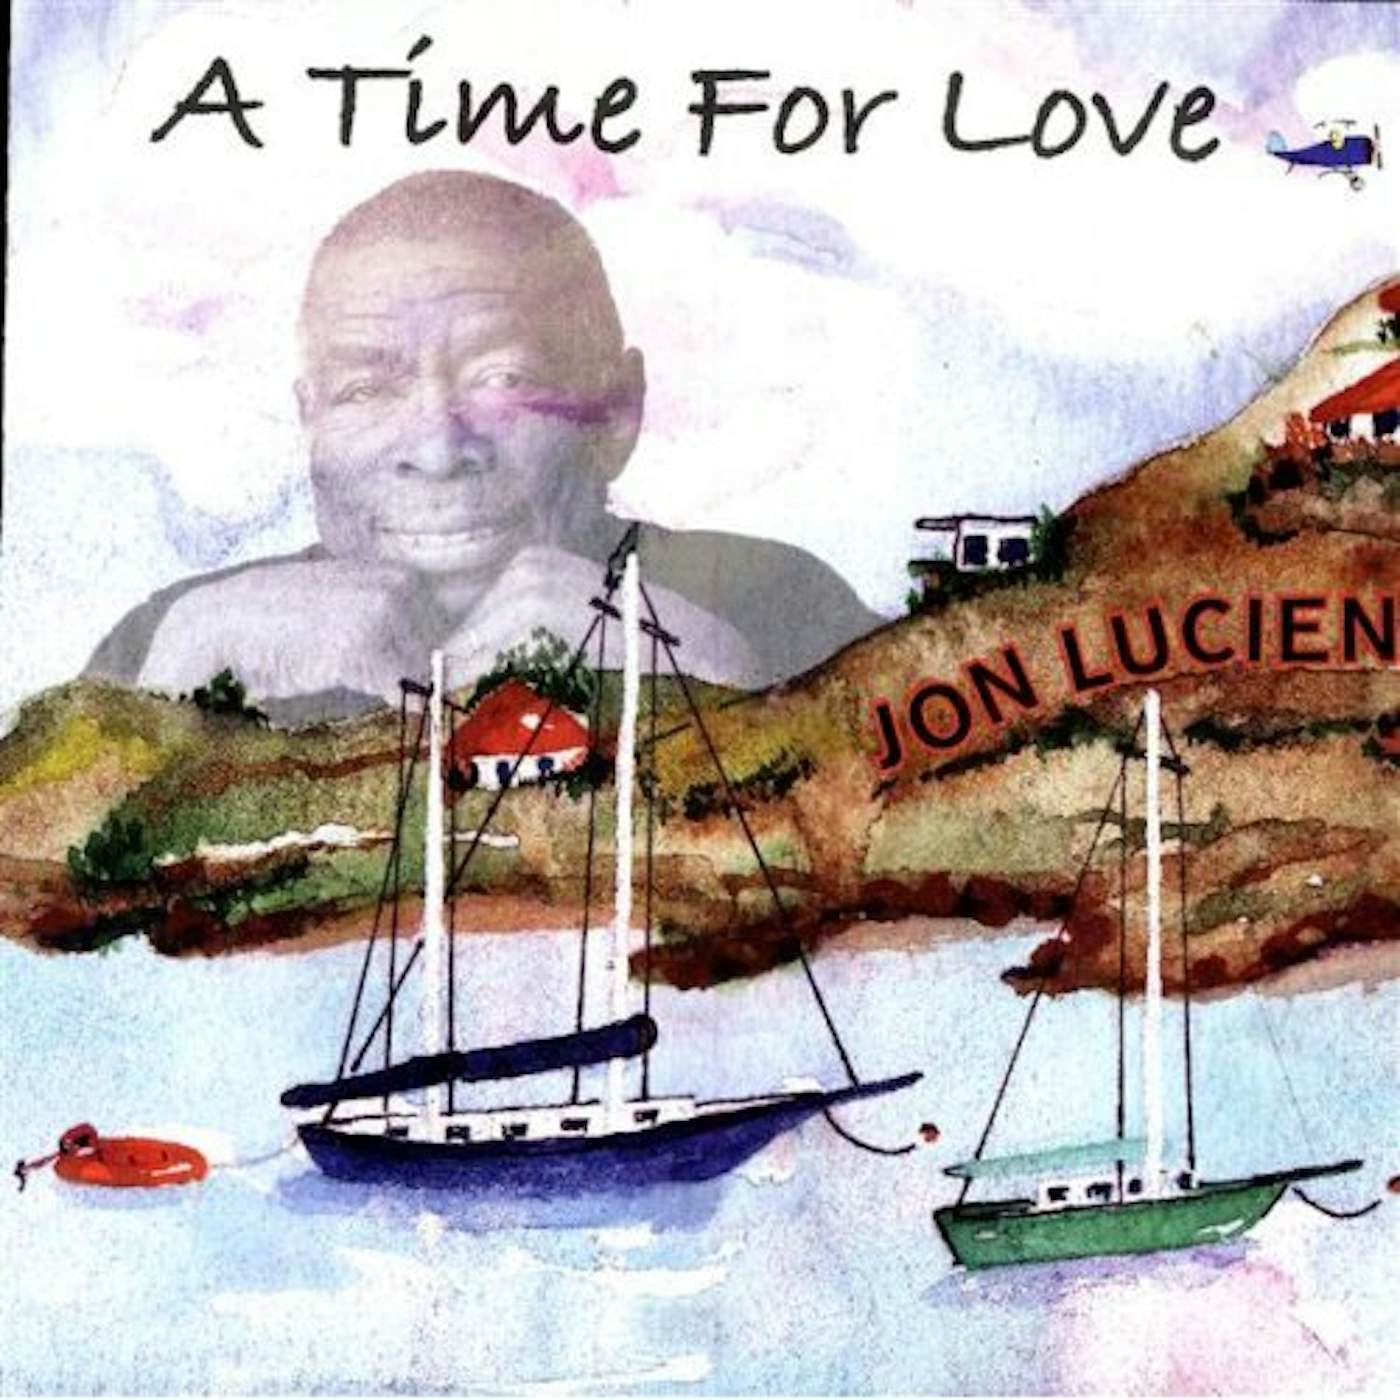 JON LUCIEN A TIME FOR LOVE CD